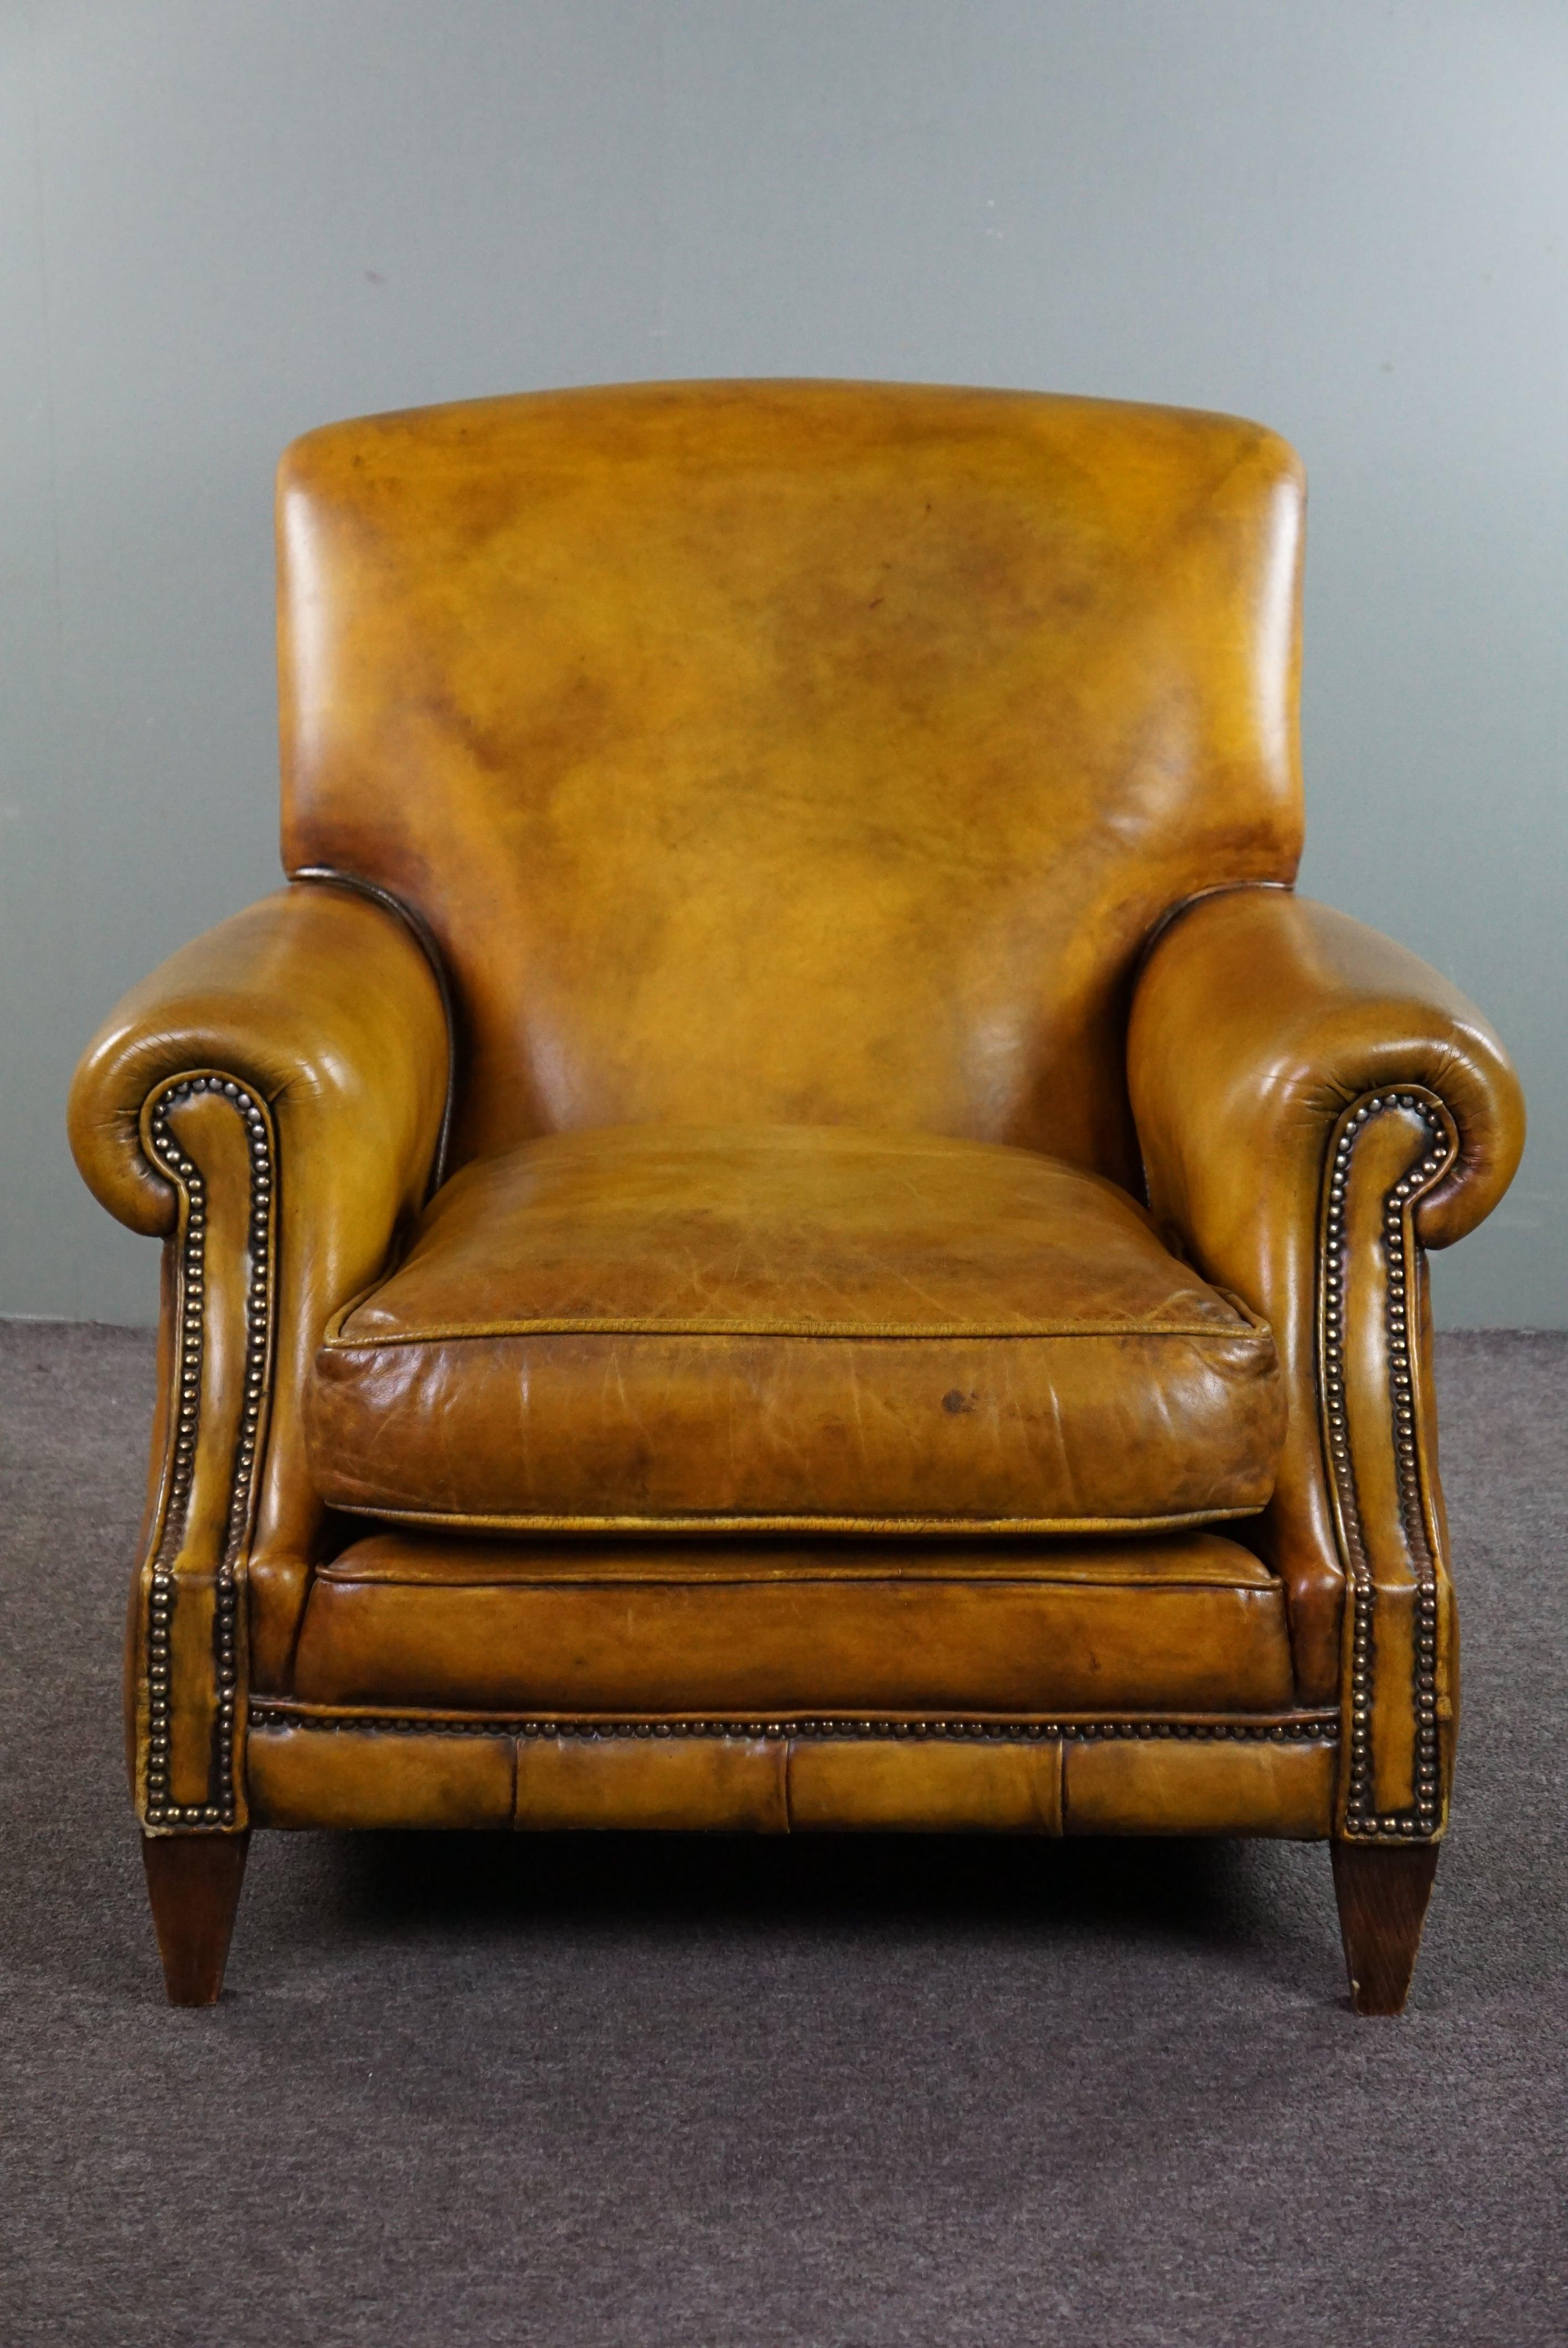 Angeboten wird dieser fantastische große englische Kuhfell-Sessel auf Rädern mit einem erstaunlichen Aussehen.

Mit seiner verstellbaren Rückenlehne ist dies ein Sessel, in dem man stundenlang sitzen kann. Darüber hinaus strahlt er durch seine